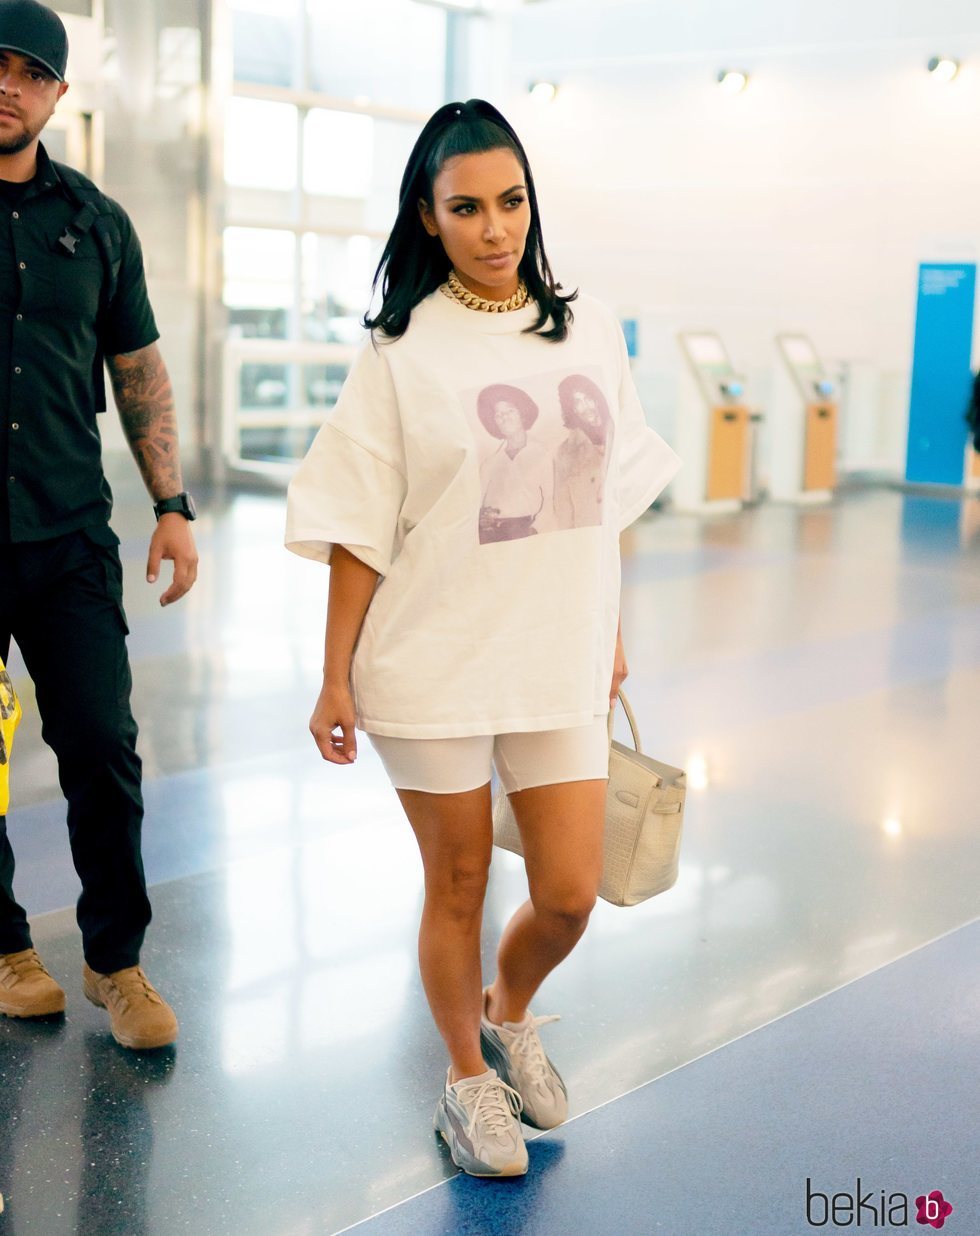 Kim Kardashian fotografiada a su llegada al JFK